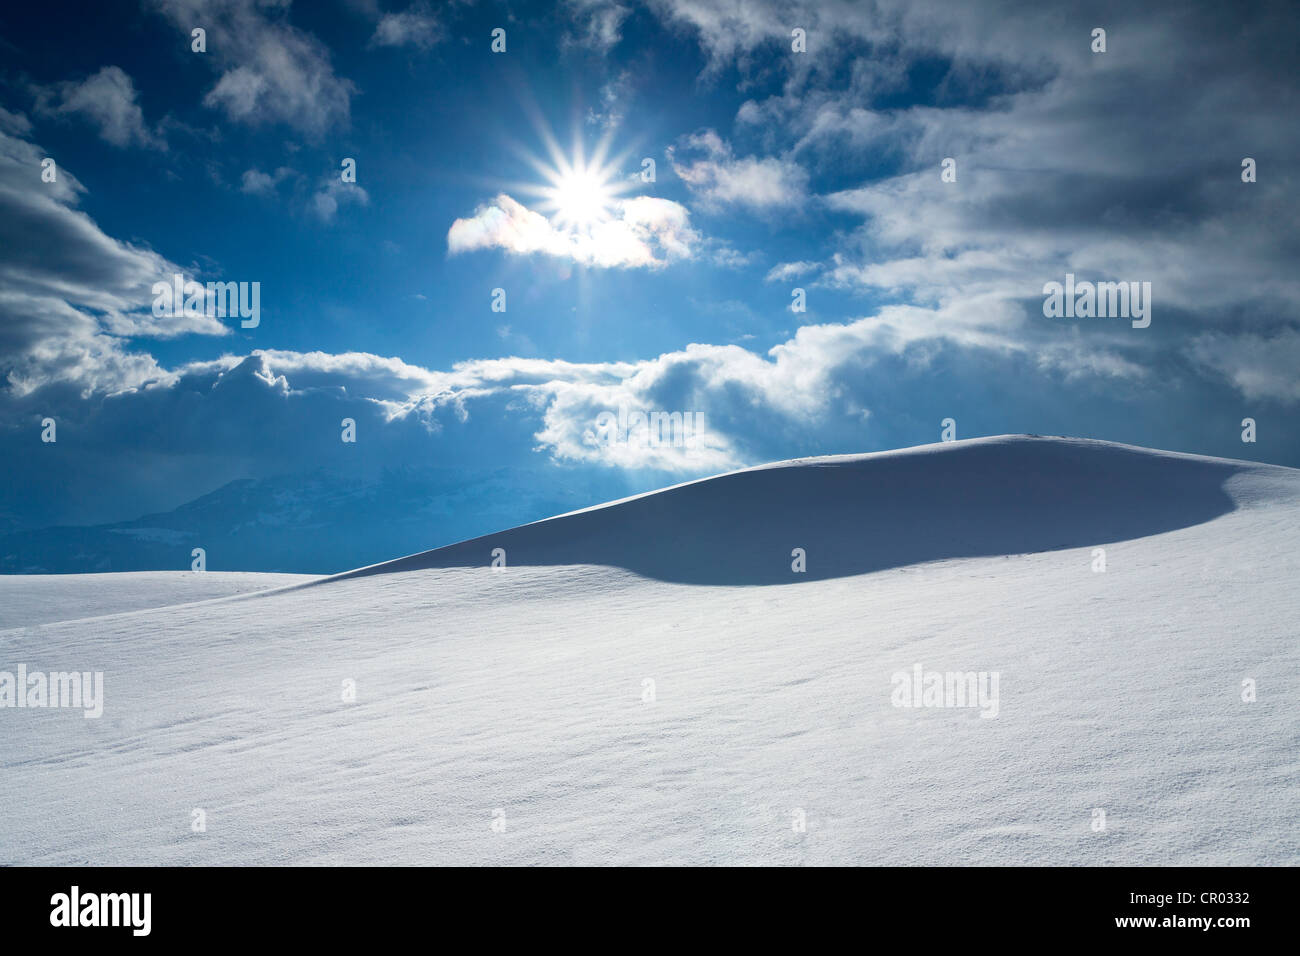 Schnee-Gesims mit Blick auf den Alpstein Bereich Rorschach Berg, Schweiz, Europa Stockfoto